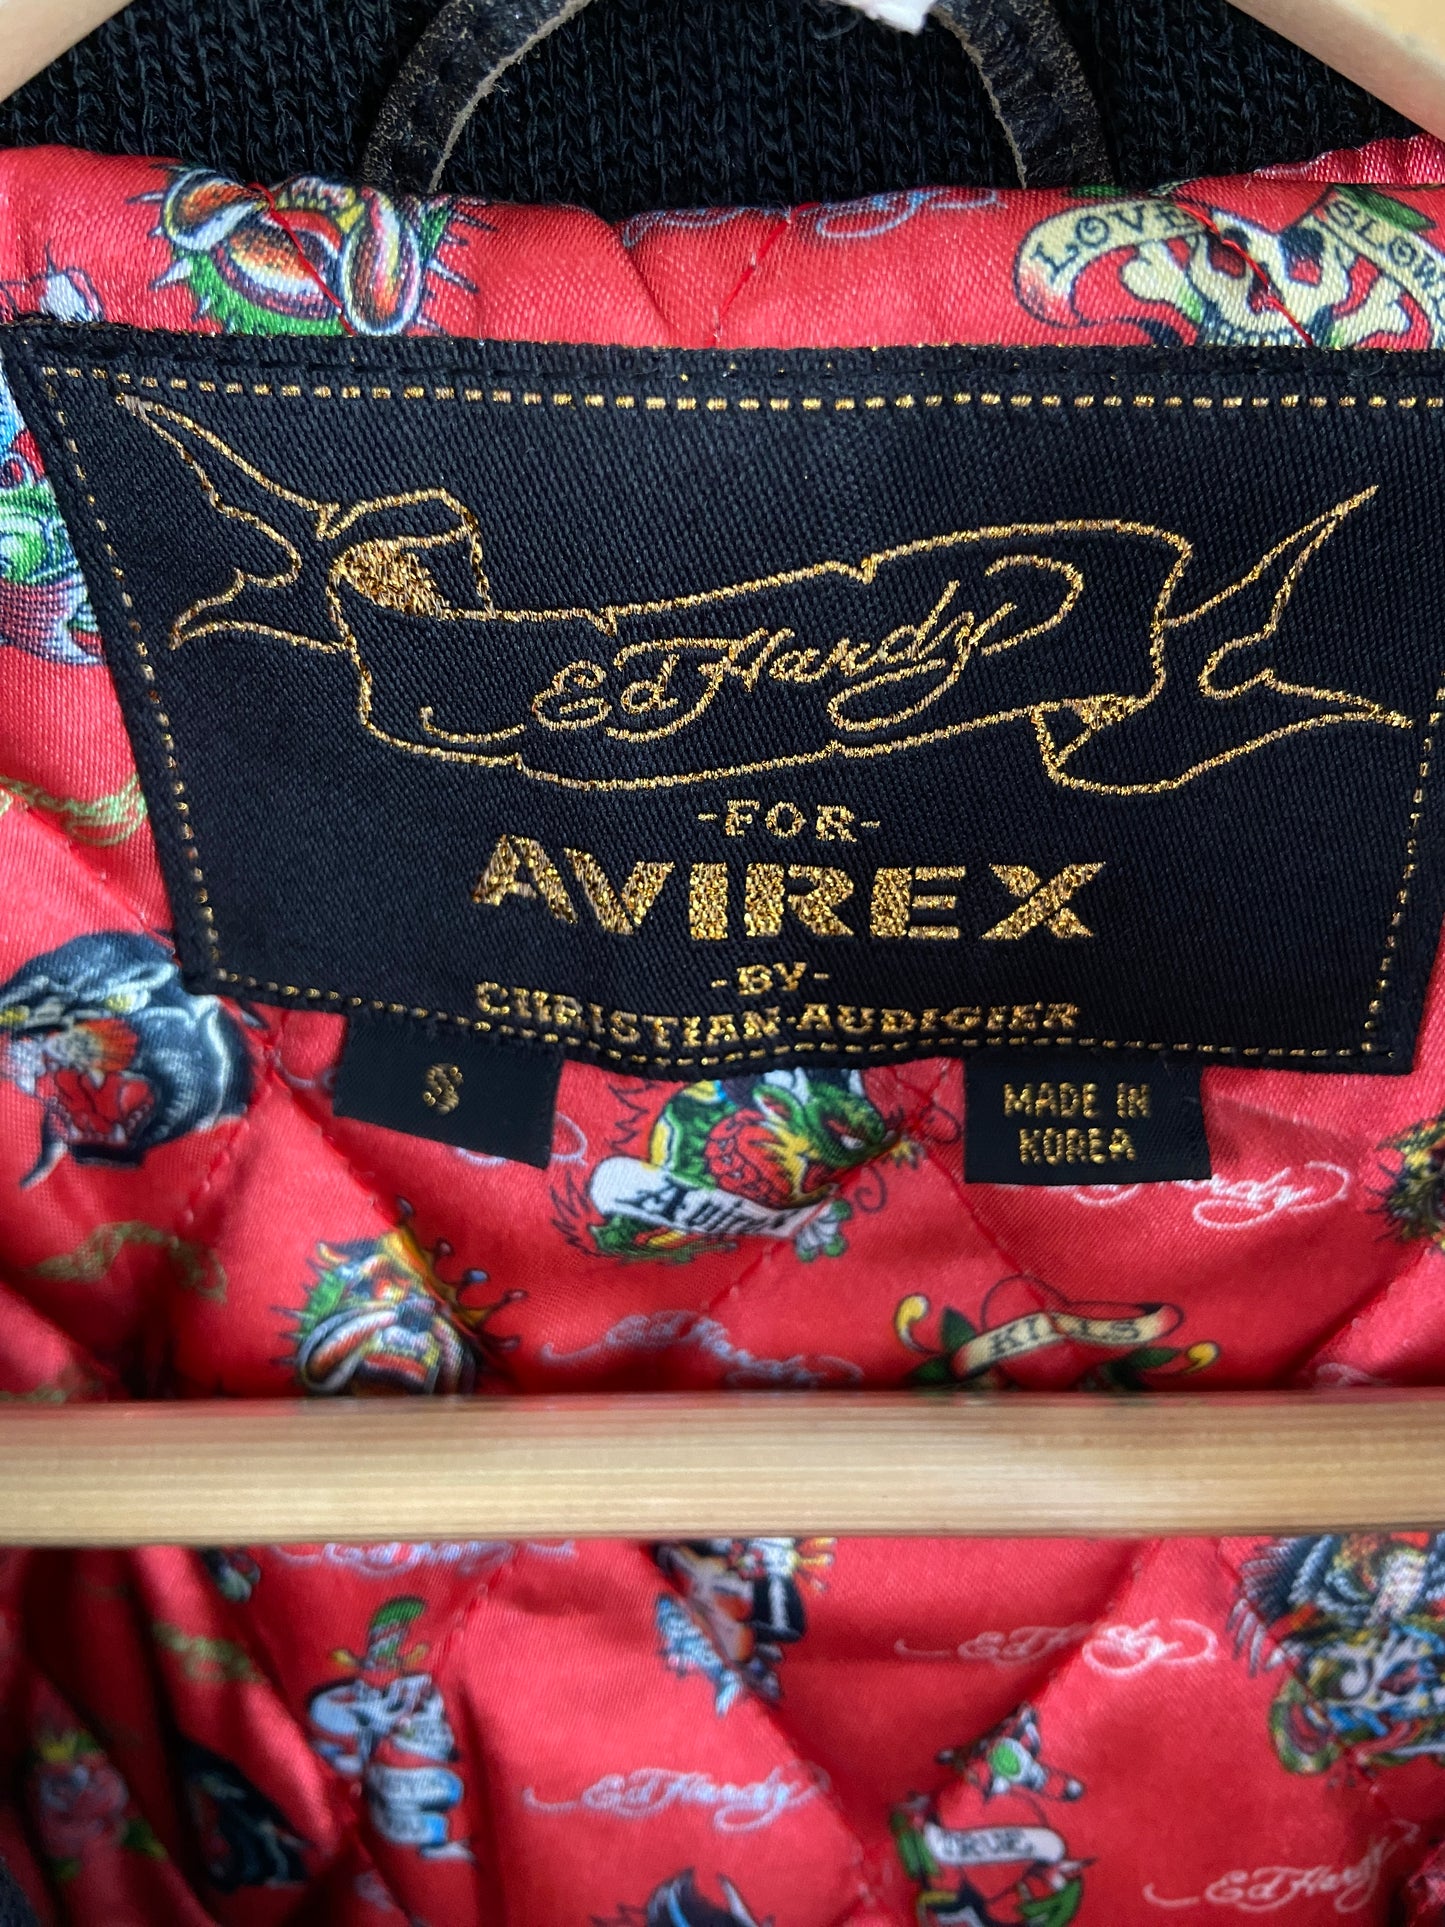 Vintage Avirex x Ed Hardy 90s Bomber Jacket